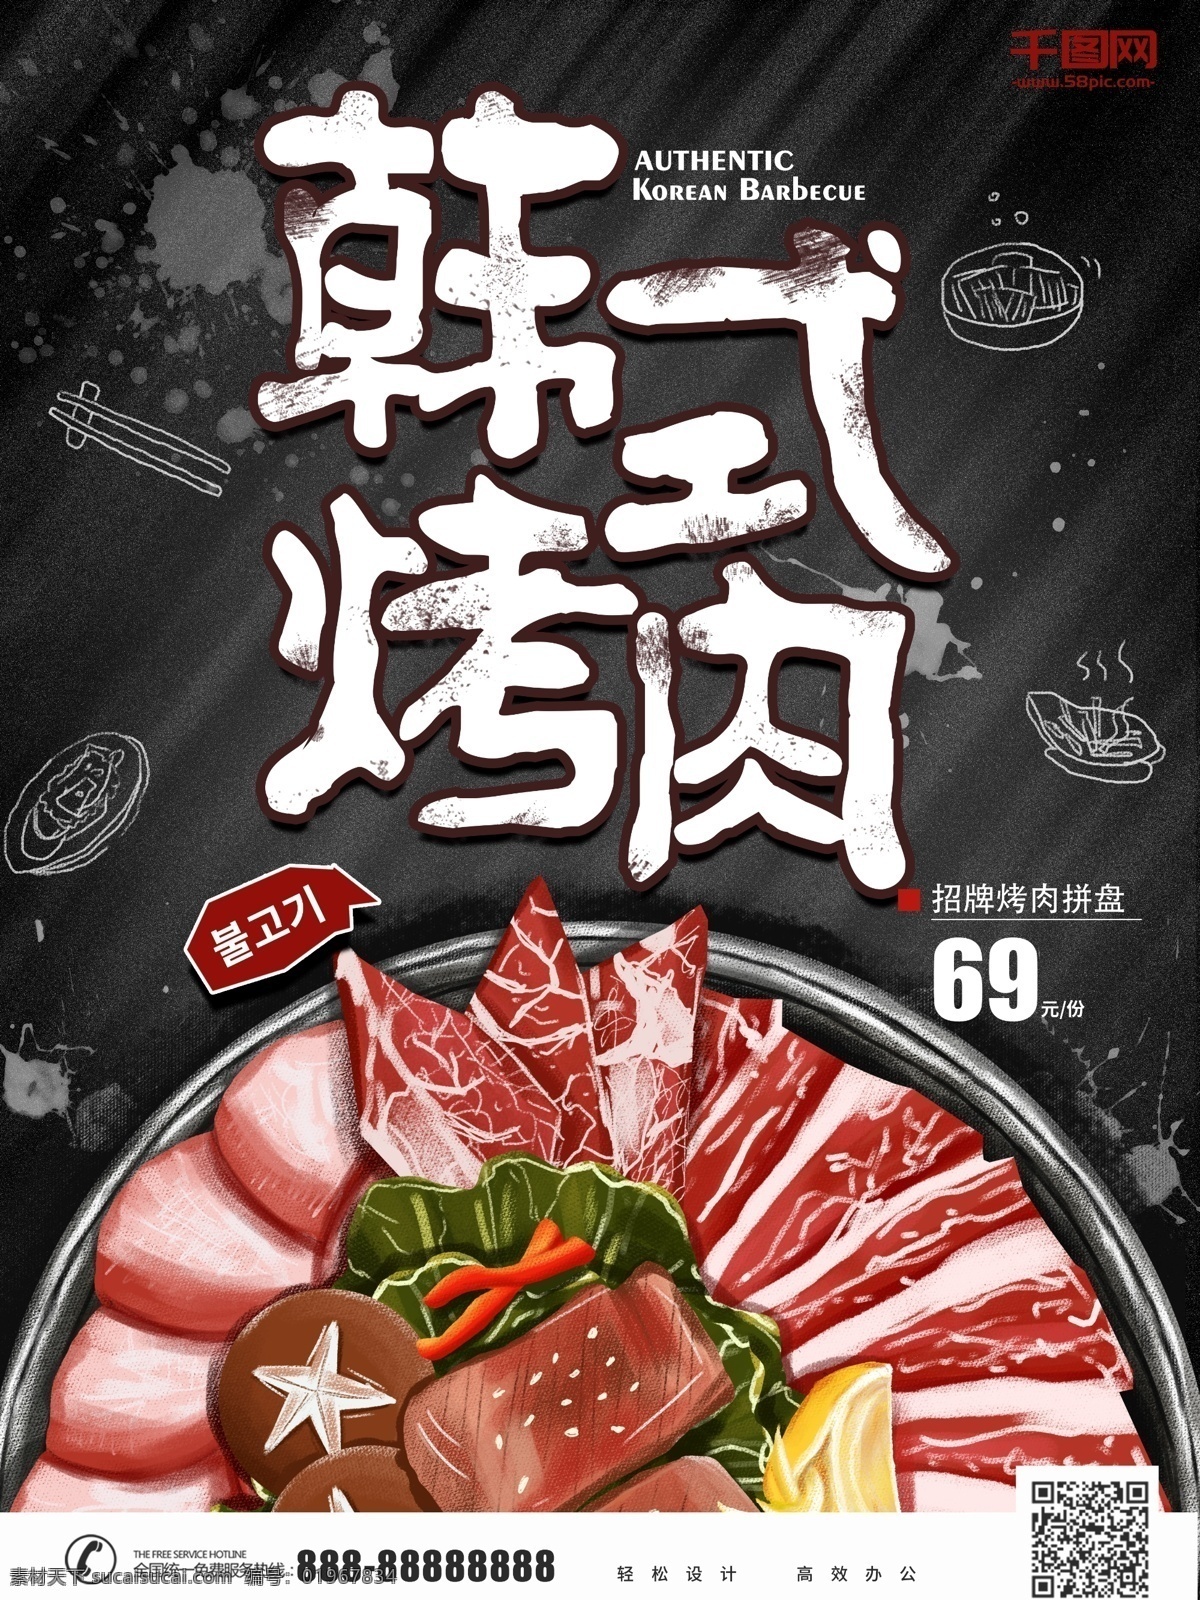 原创 手绘 美食 插画 韩式 烤肉 海报 卡通 烧烤 宣传 写实 韩式烤肉 韩国烤肉 活动